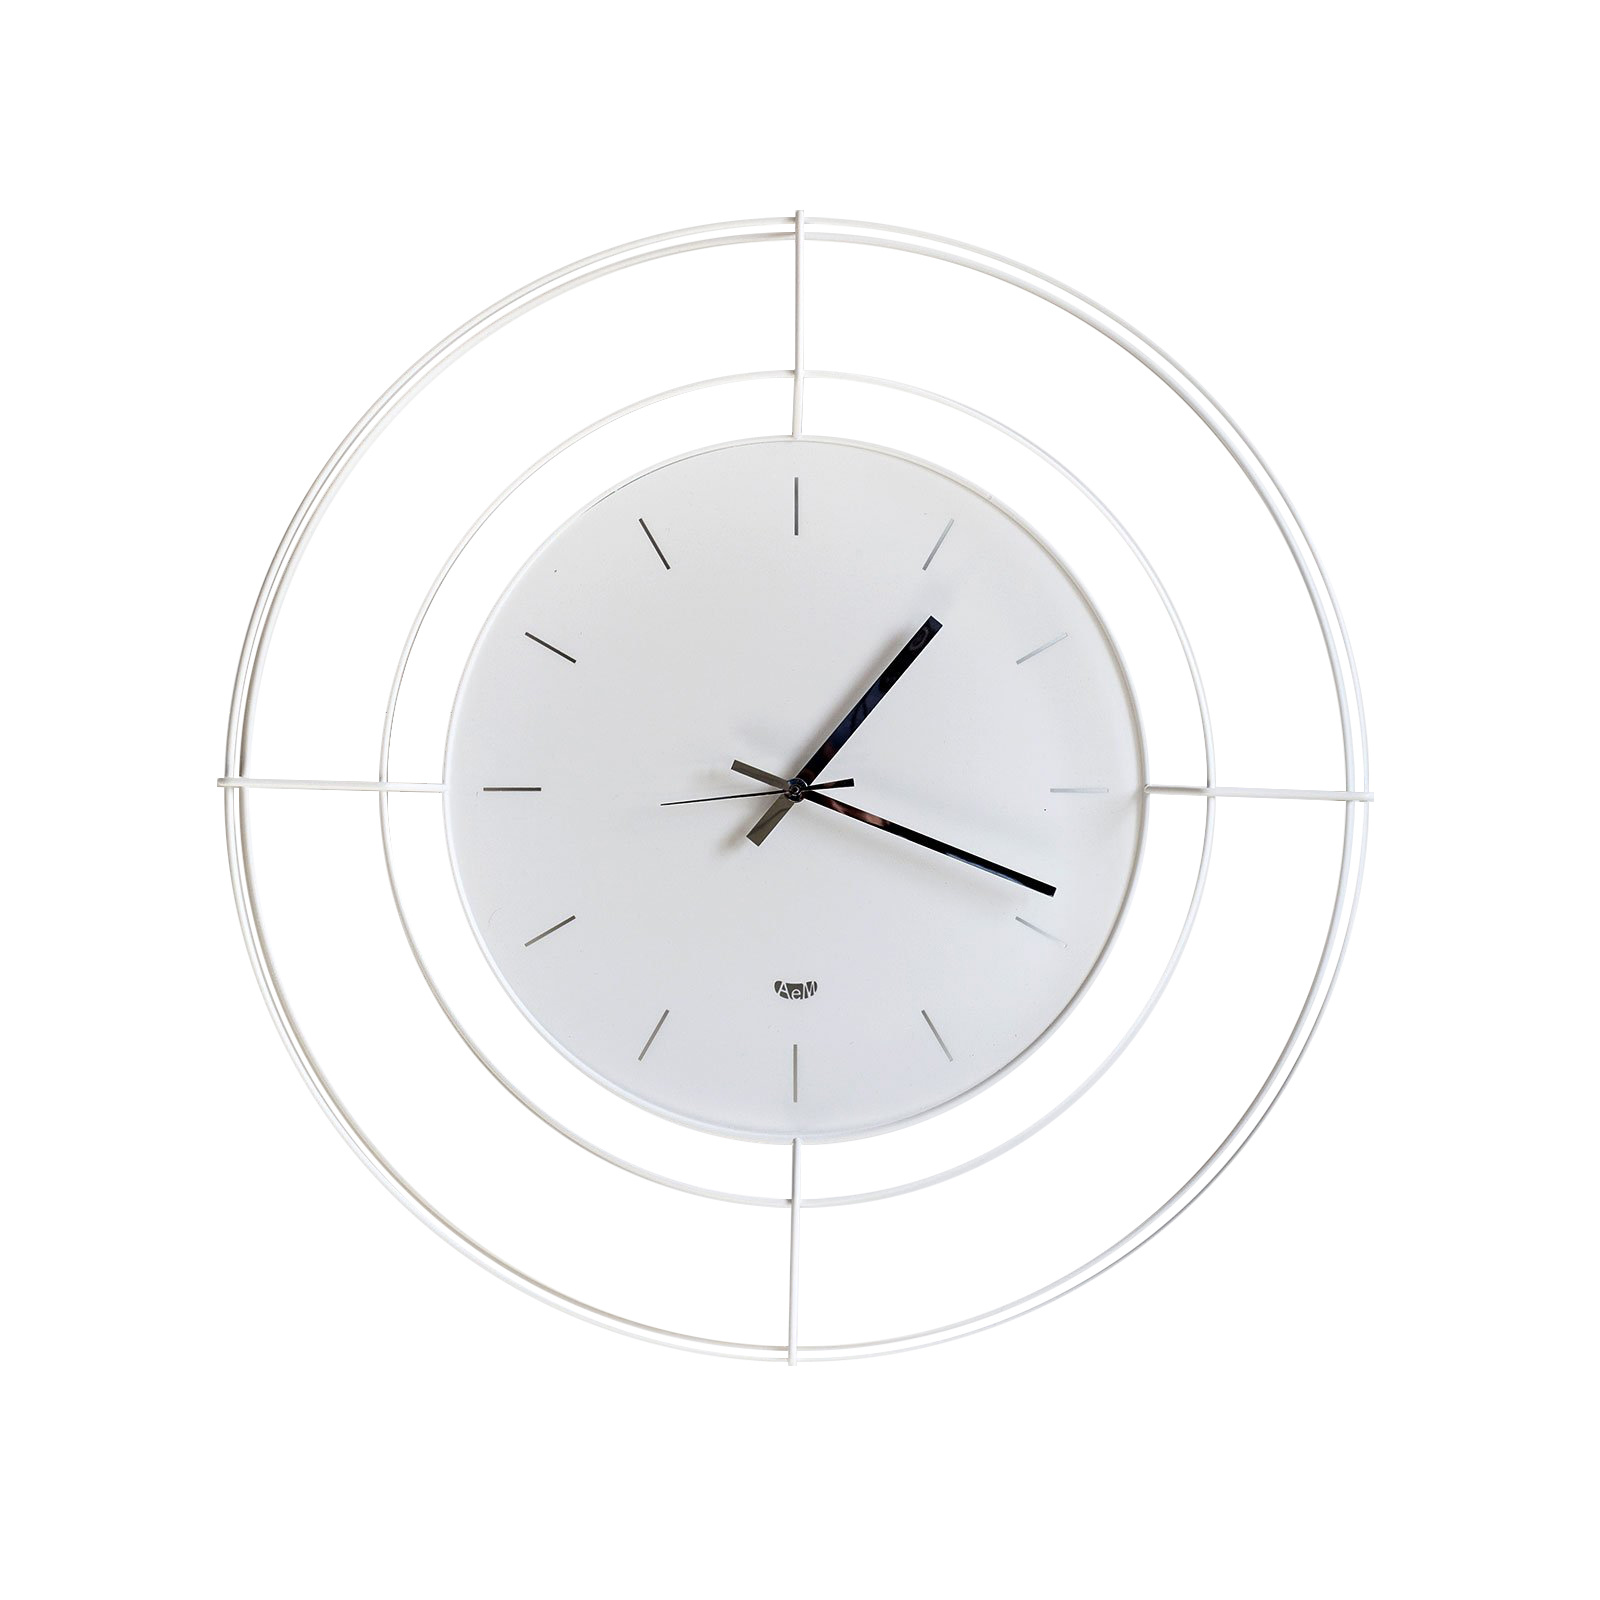 Arti & Mestieri Design - Wall clock Italian Design Nudo Small 2684 C71 Black